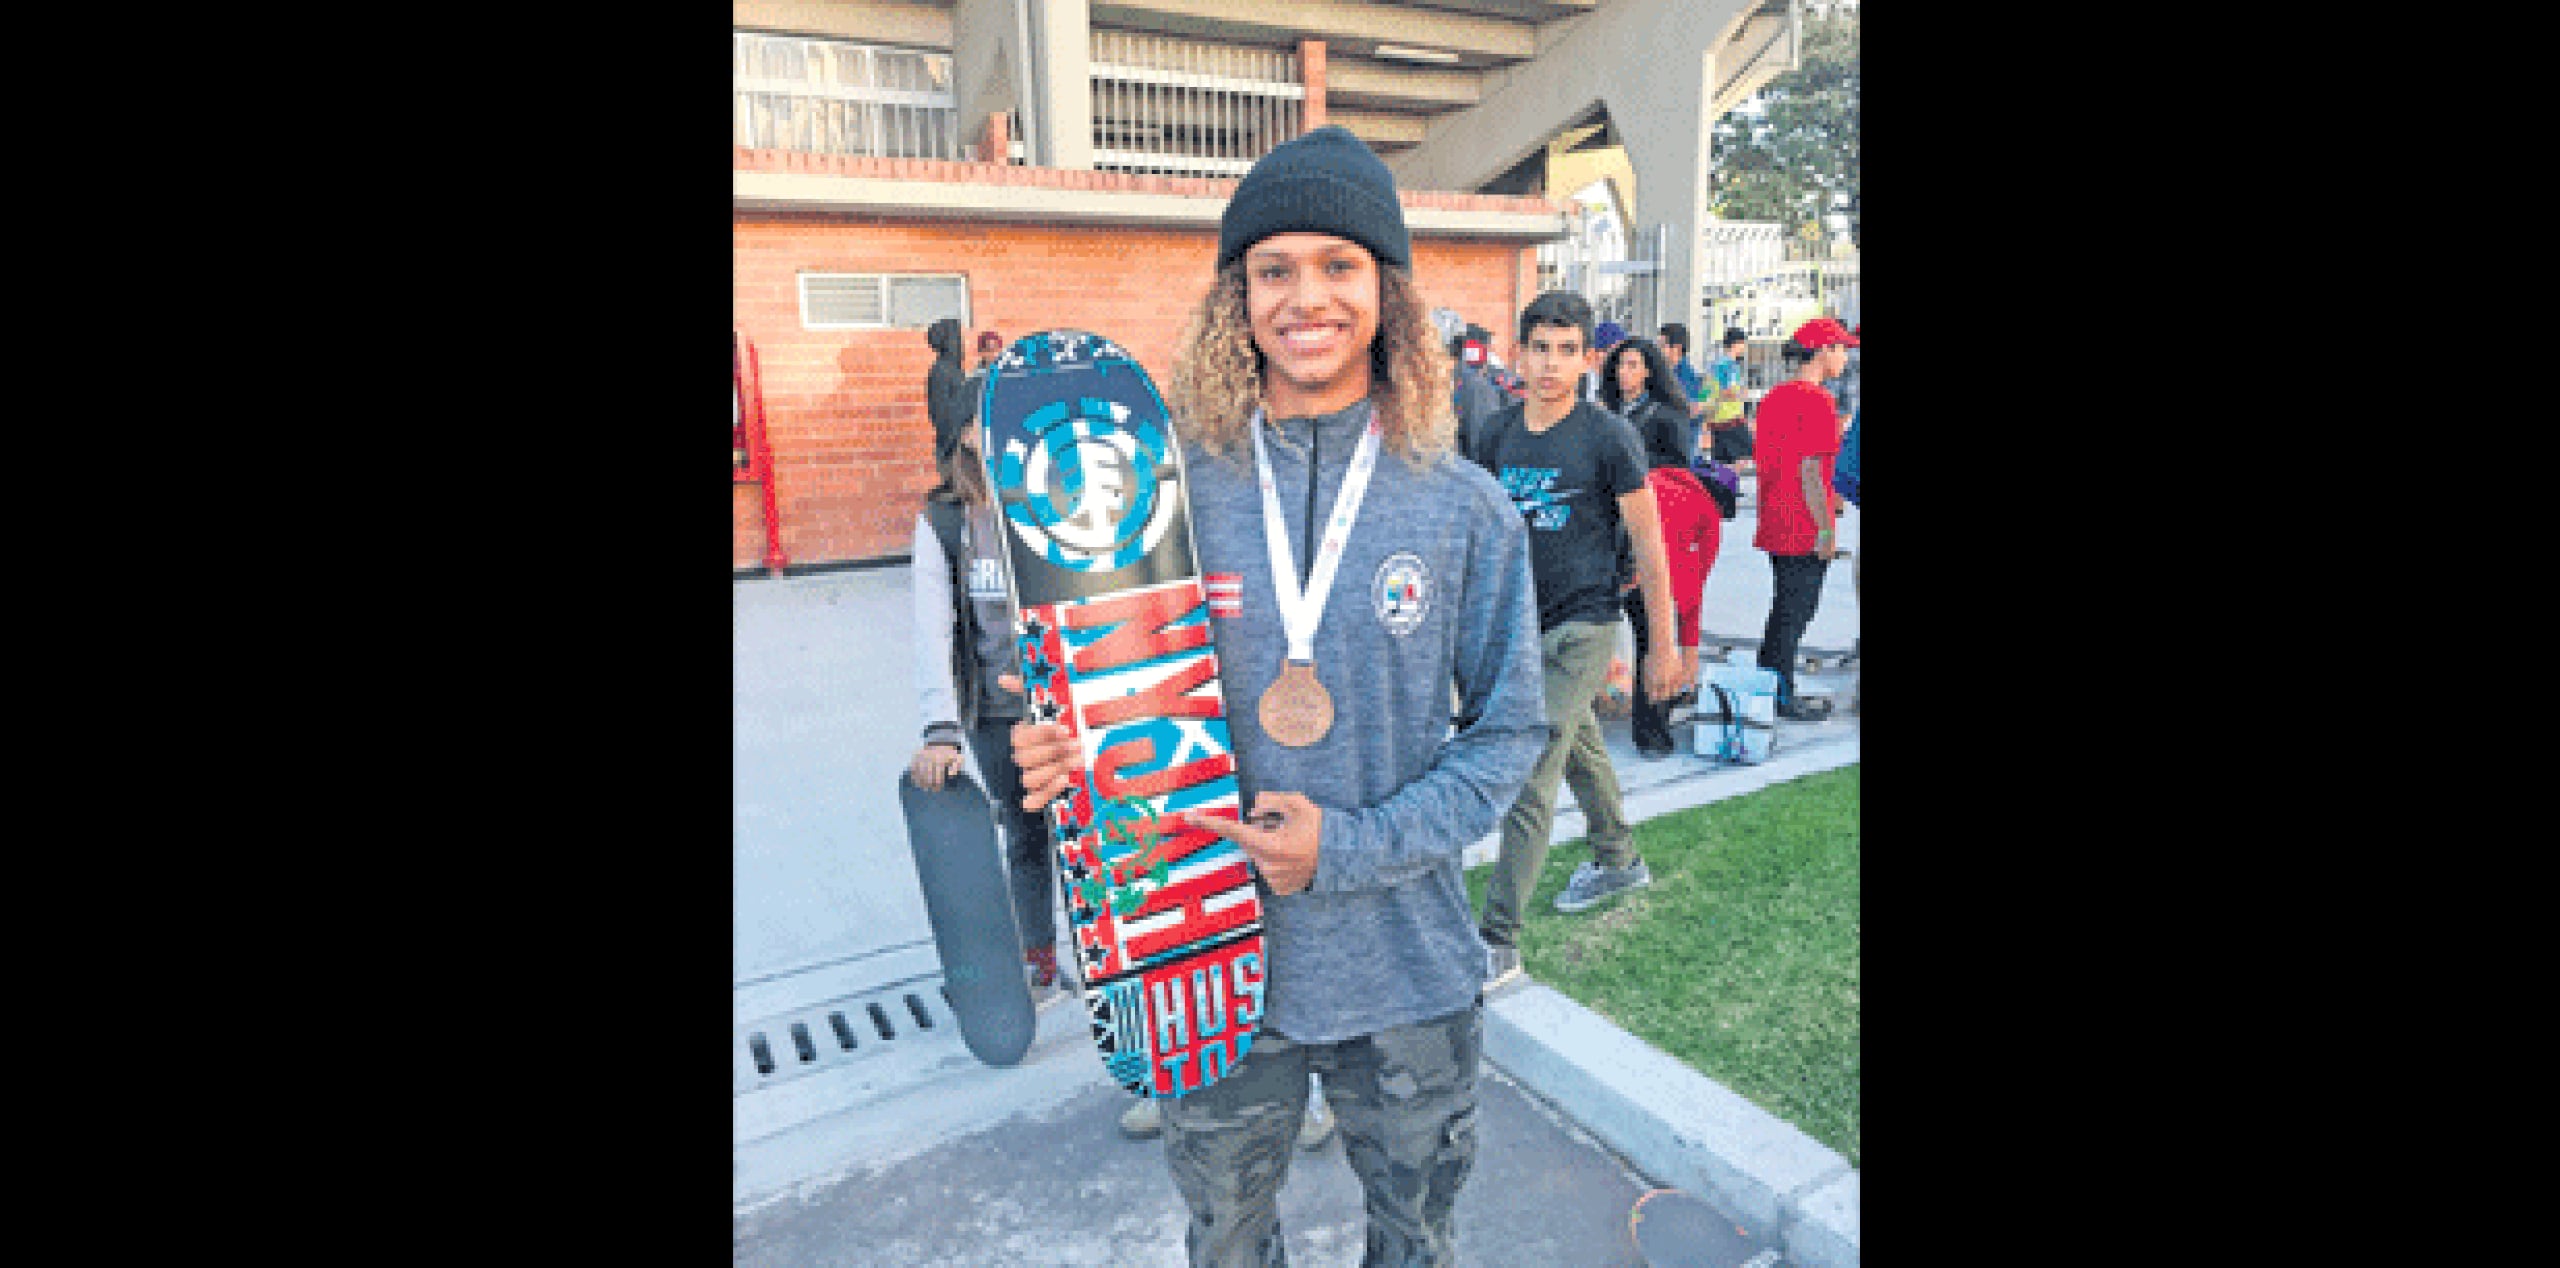 El joven luquillense representó a Puerto Rico en el Primer Panamericano de Skateboarding, efectuado en el Palacio de los Deportes en Bogotá, Colombia. (SUMINISTRADA)